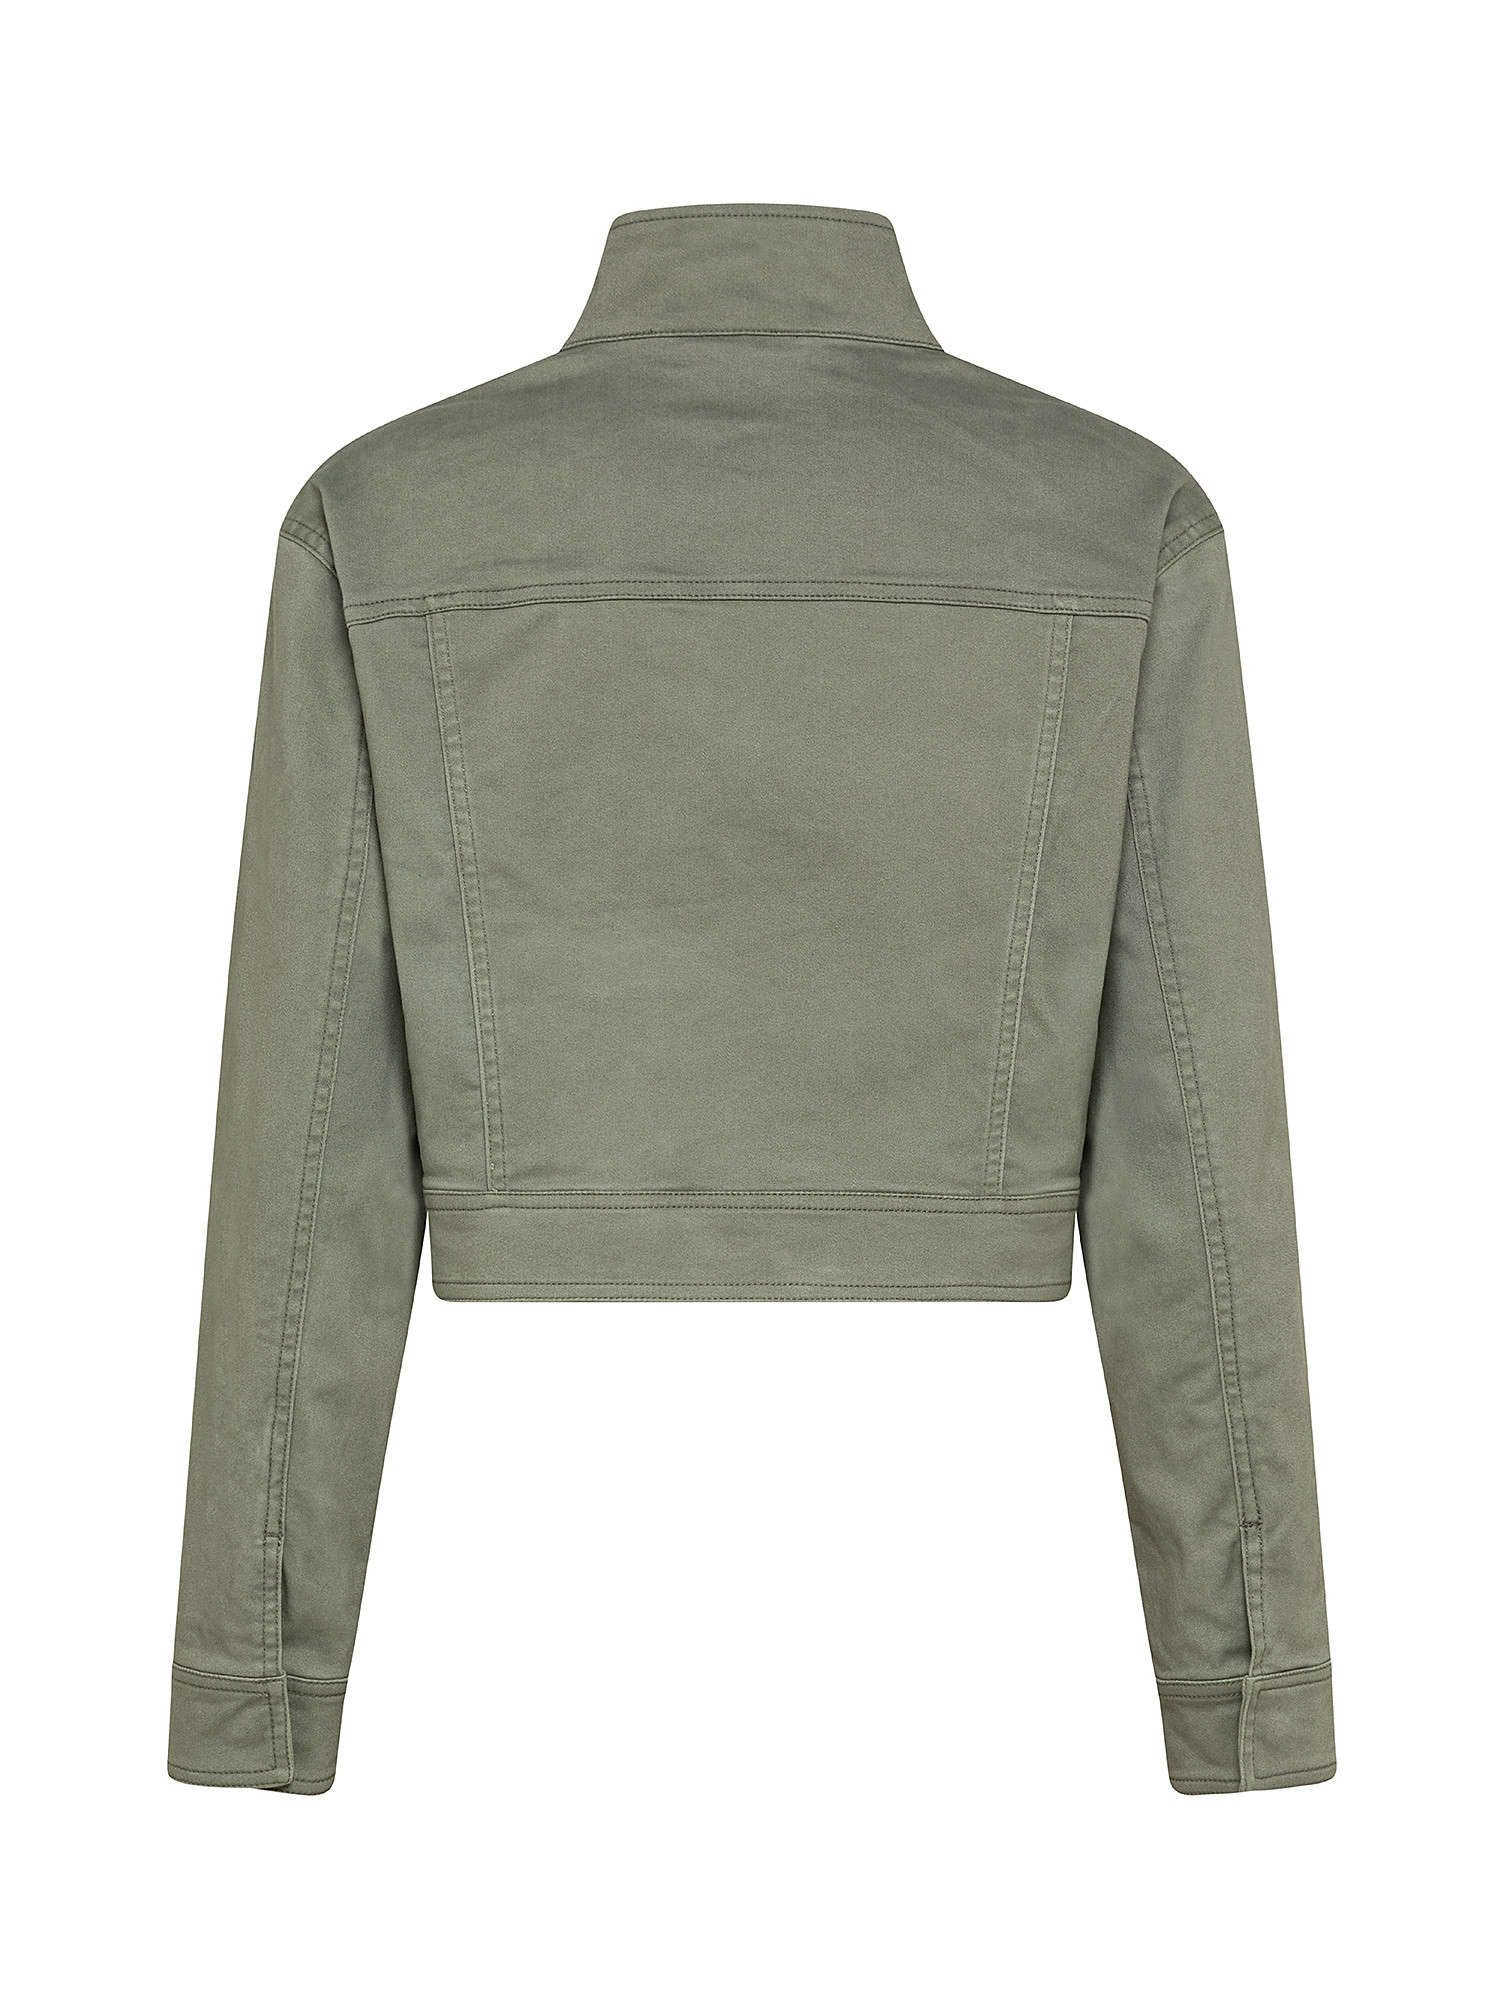 Jacket, Olive Green, large image number 1